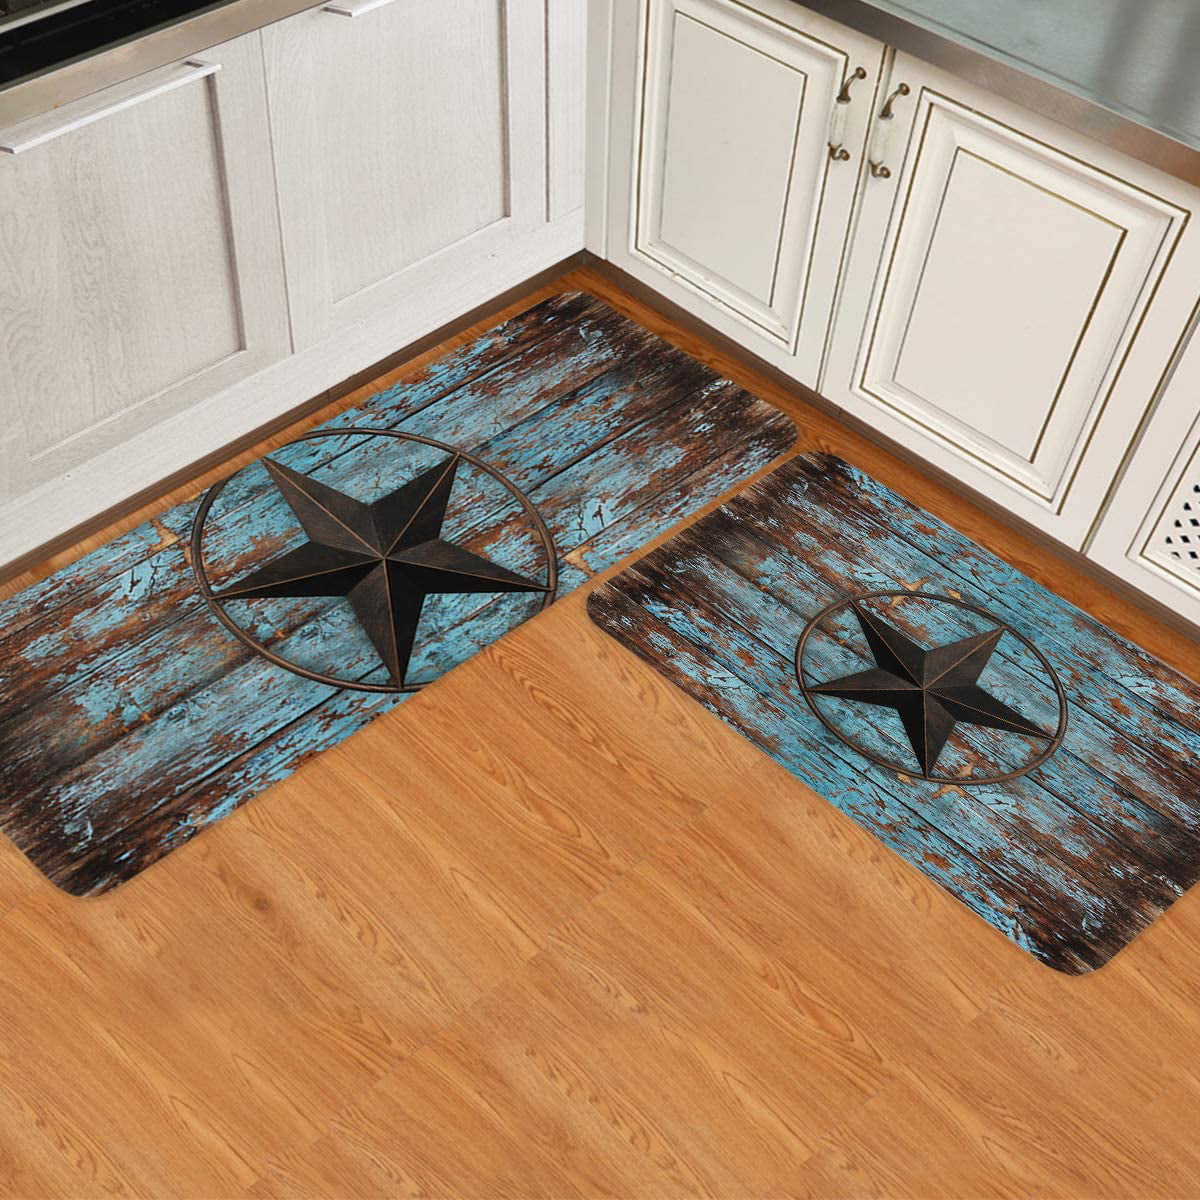 Details about   Runner Rug Laundry Room Floor Mat Doormat Carpets Rustic Color Waterproof 